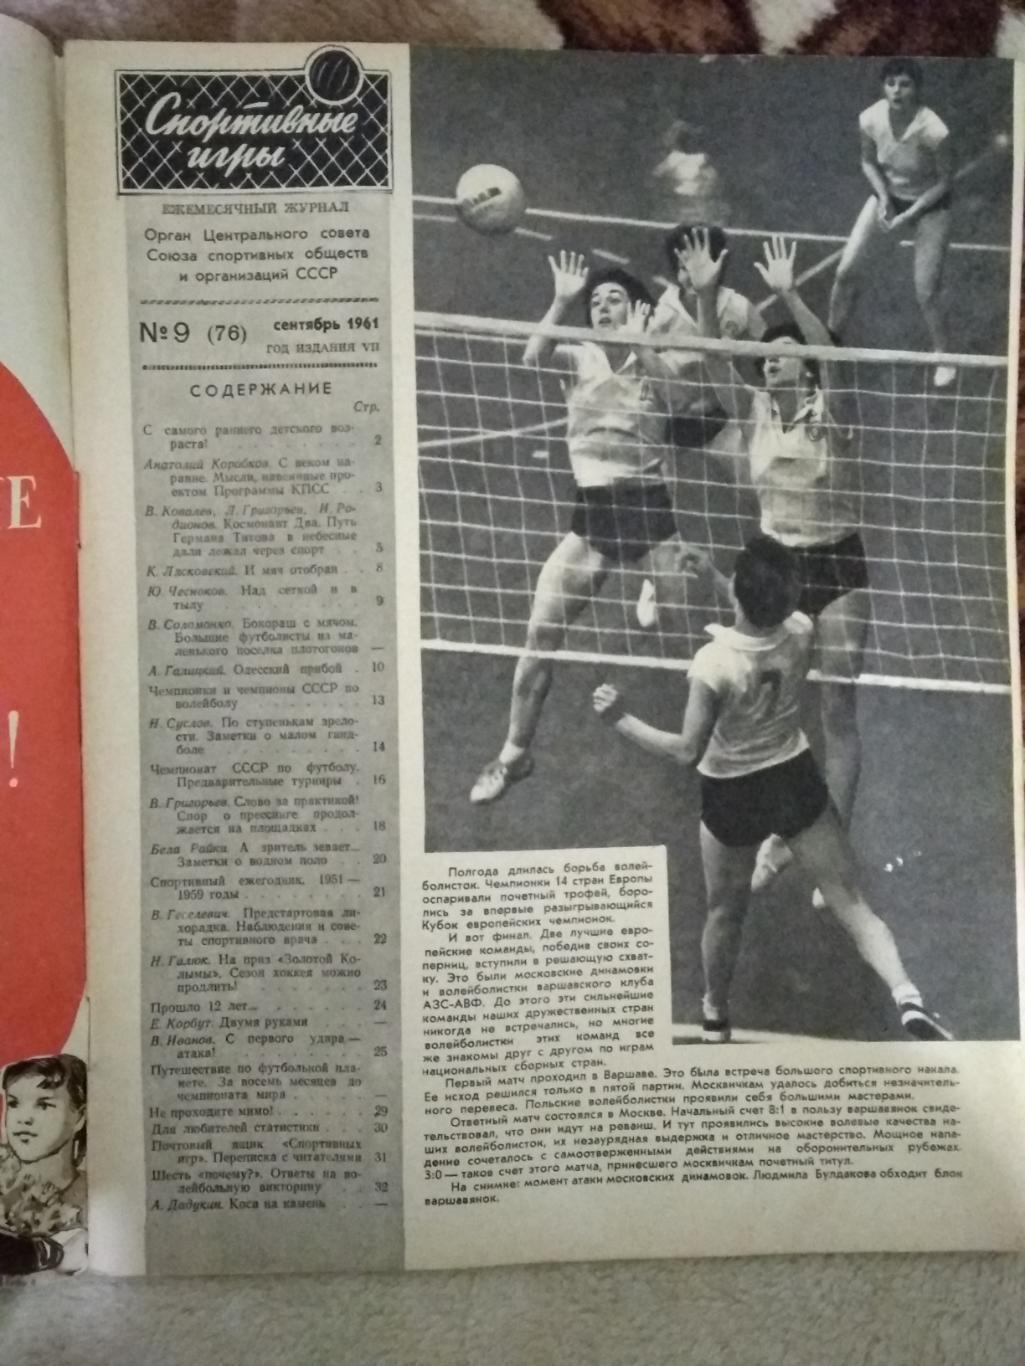 Журнал. Спортивные игры № 9 1961 г. 1